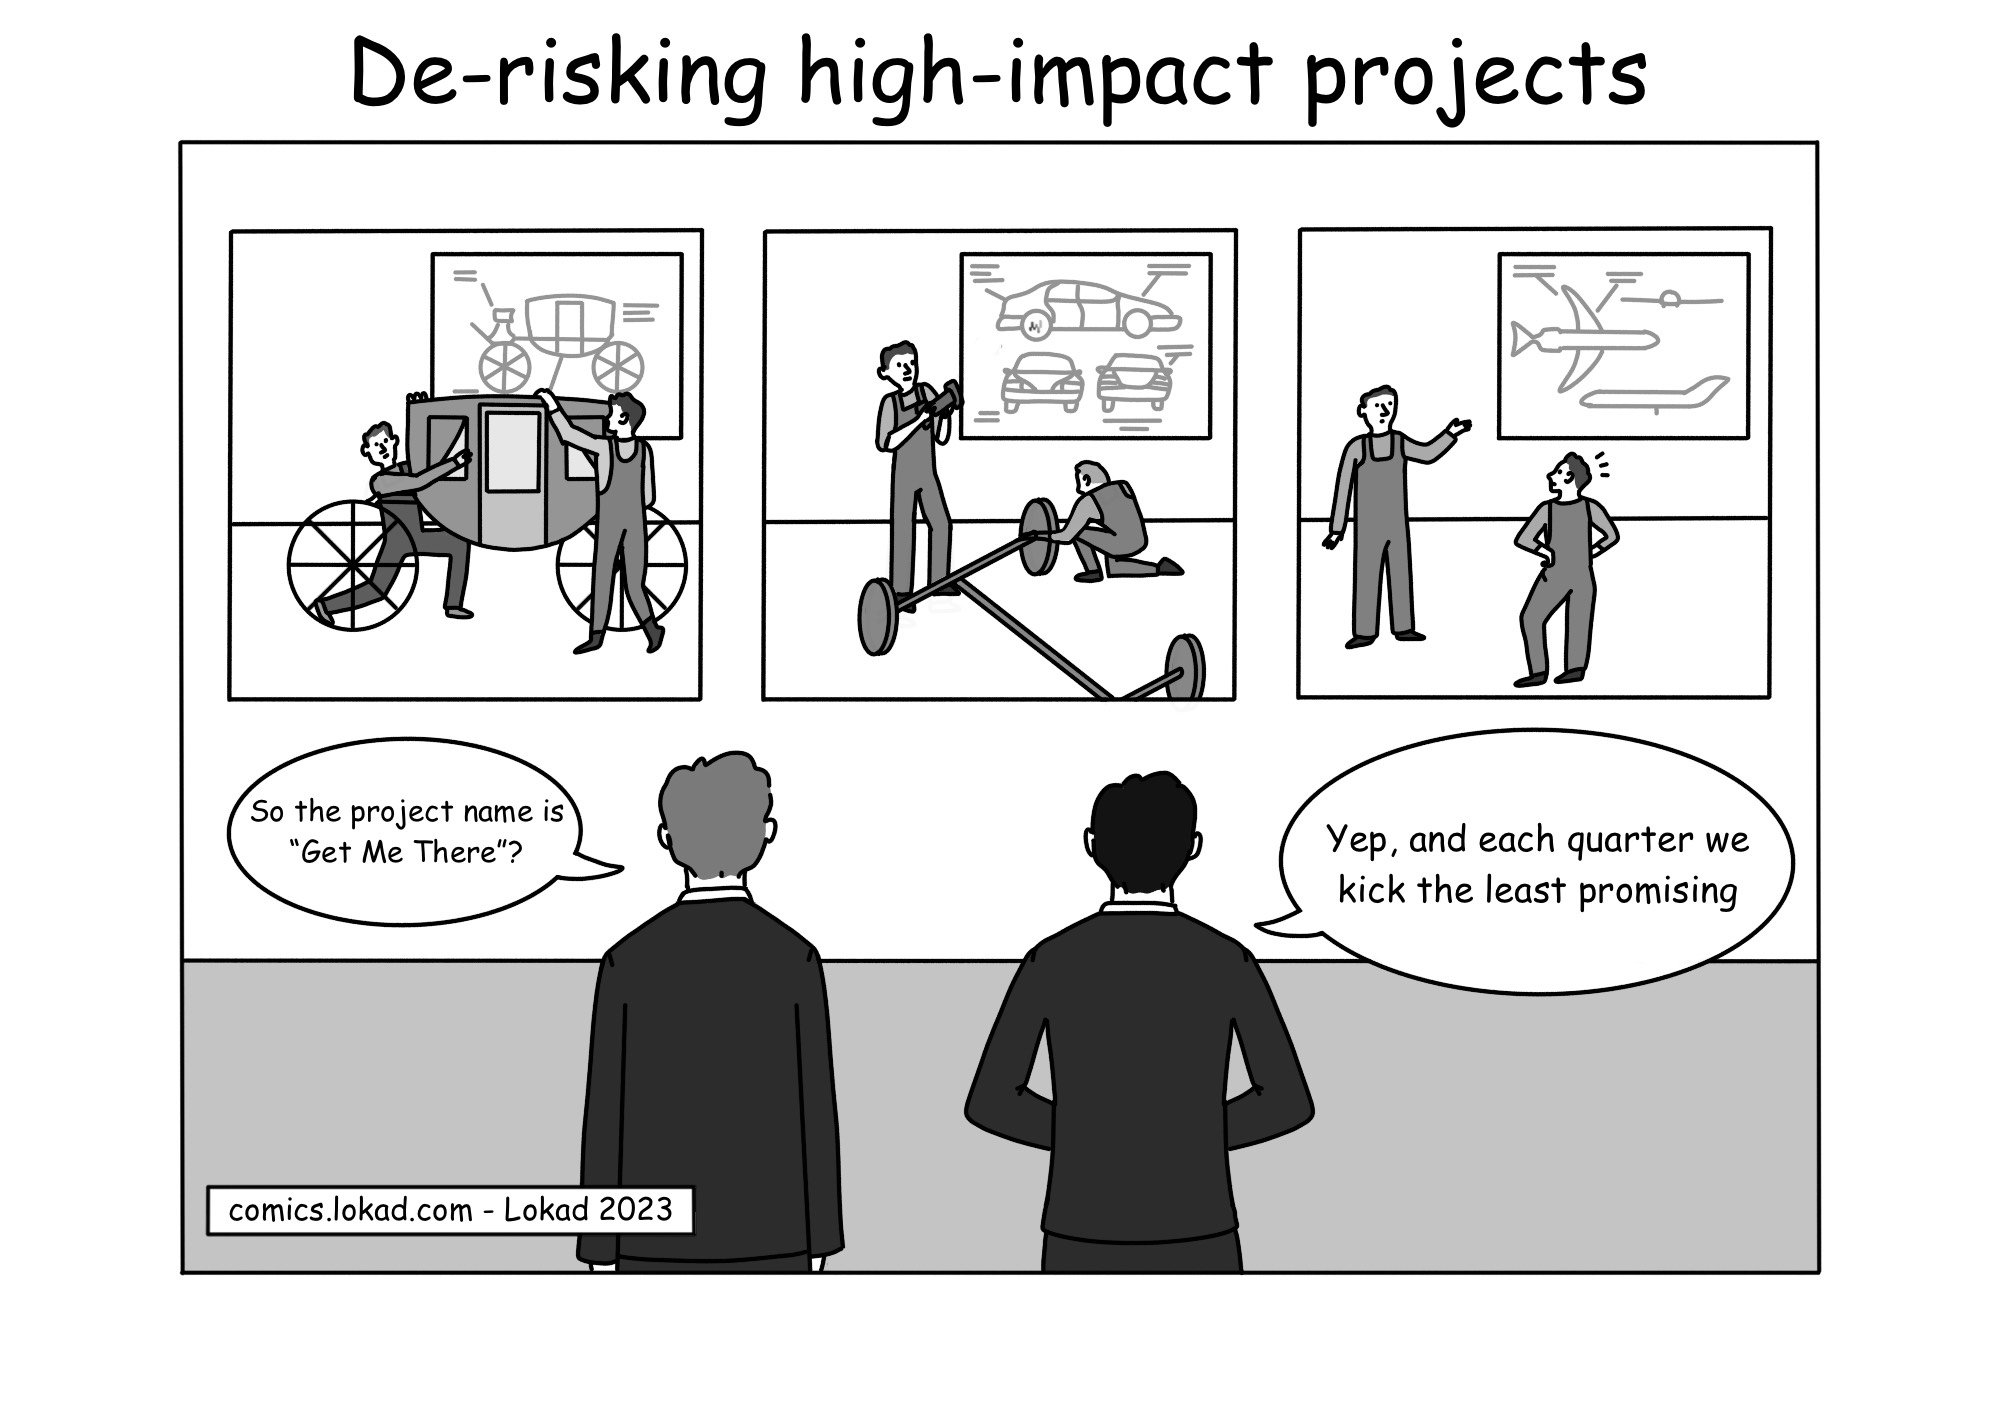 Cómic de desmitificación de proyectos de alto impacto